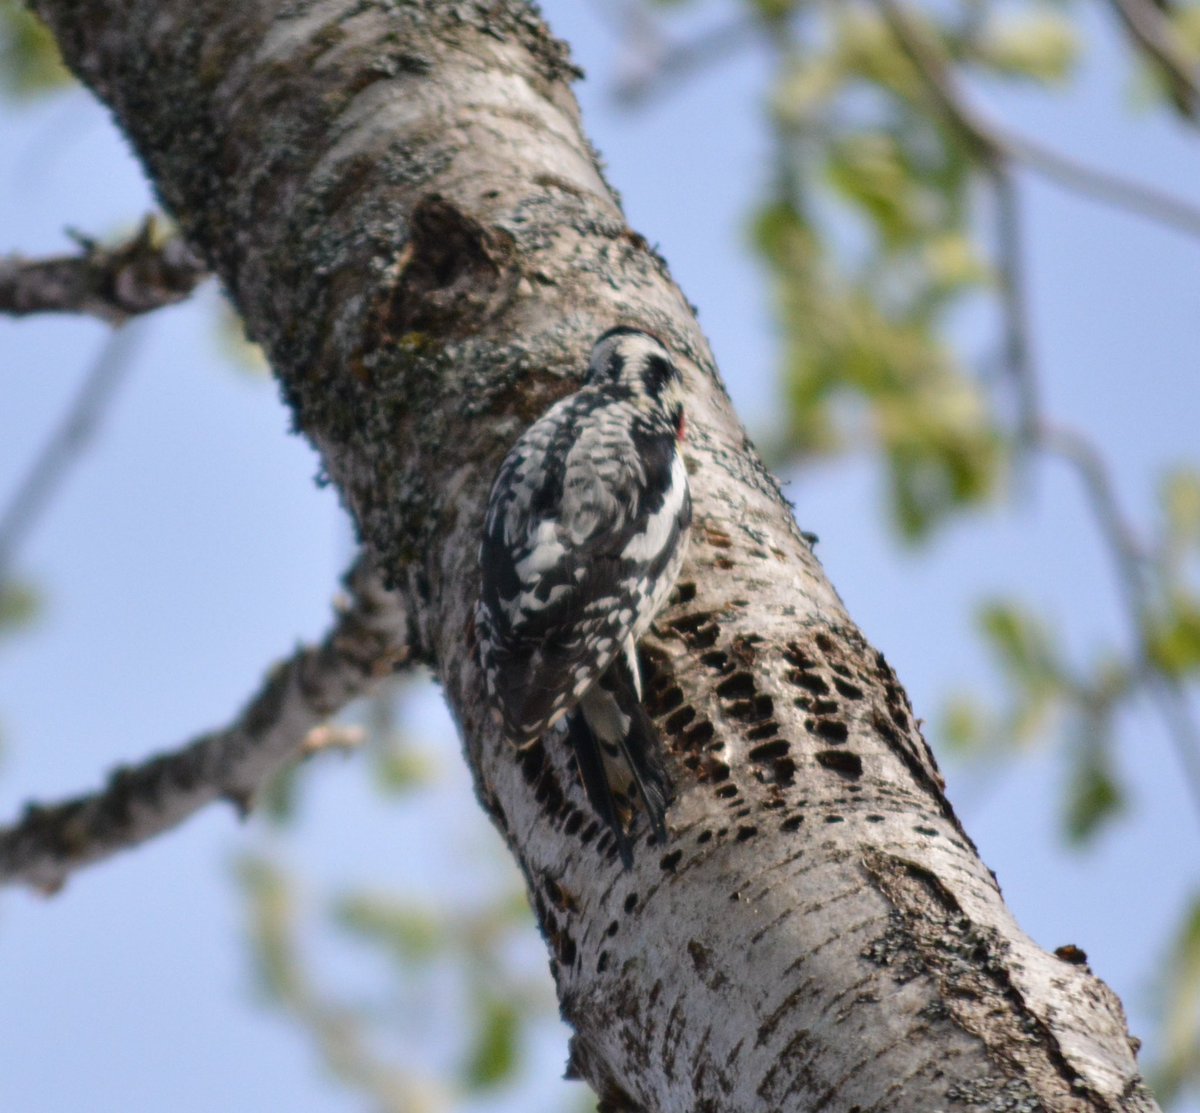 Spot the woodpecker! 👇 #nature #birds